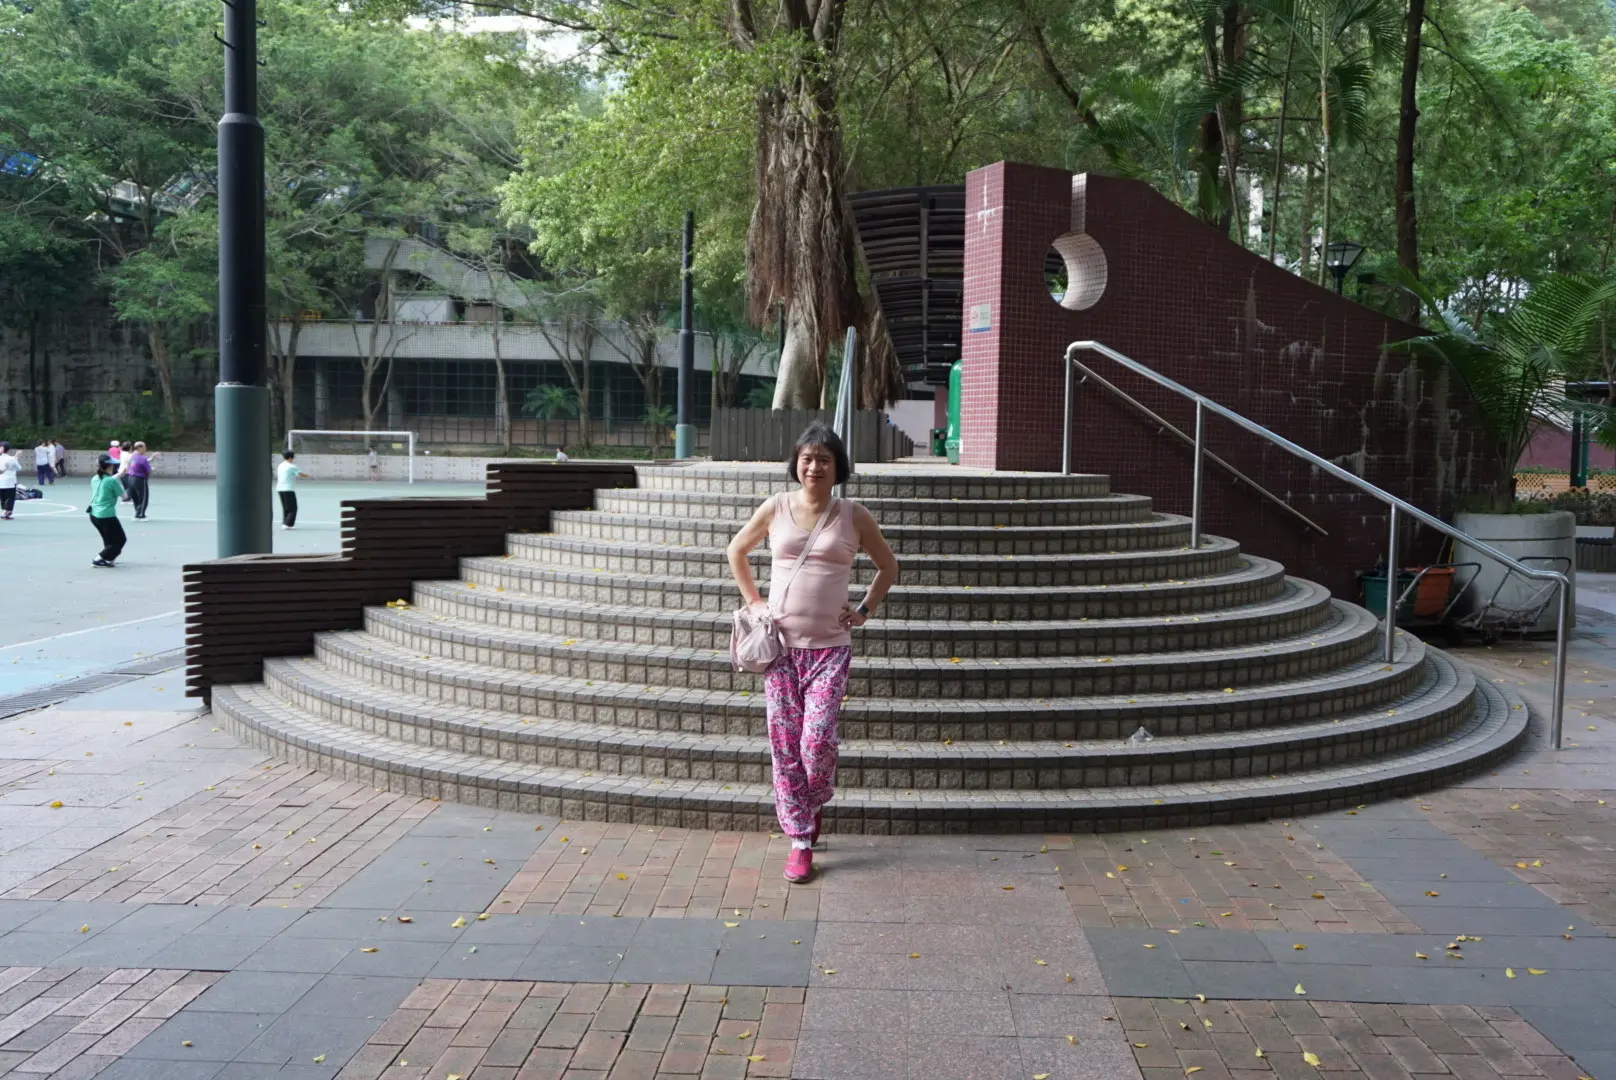 Wan Chai Park